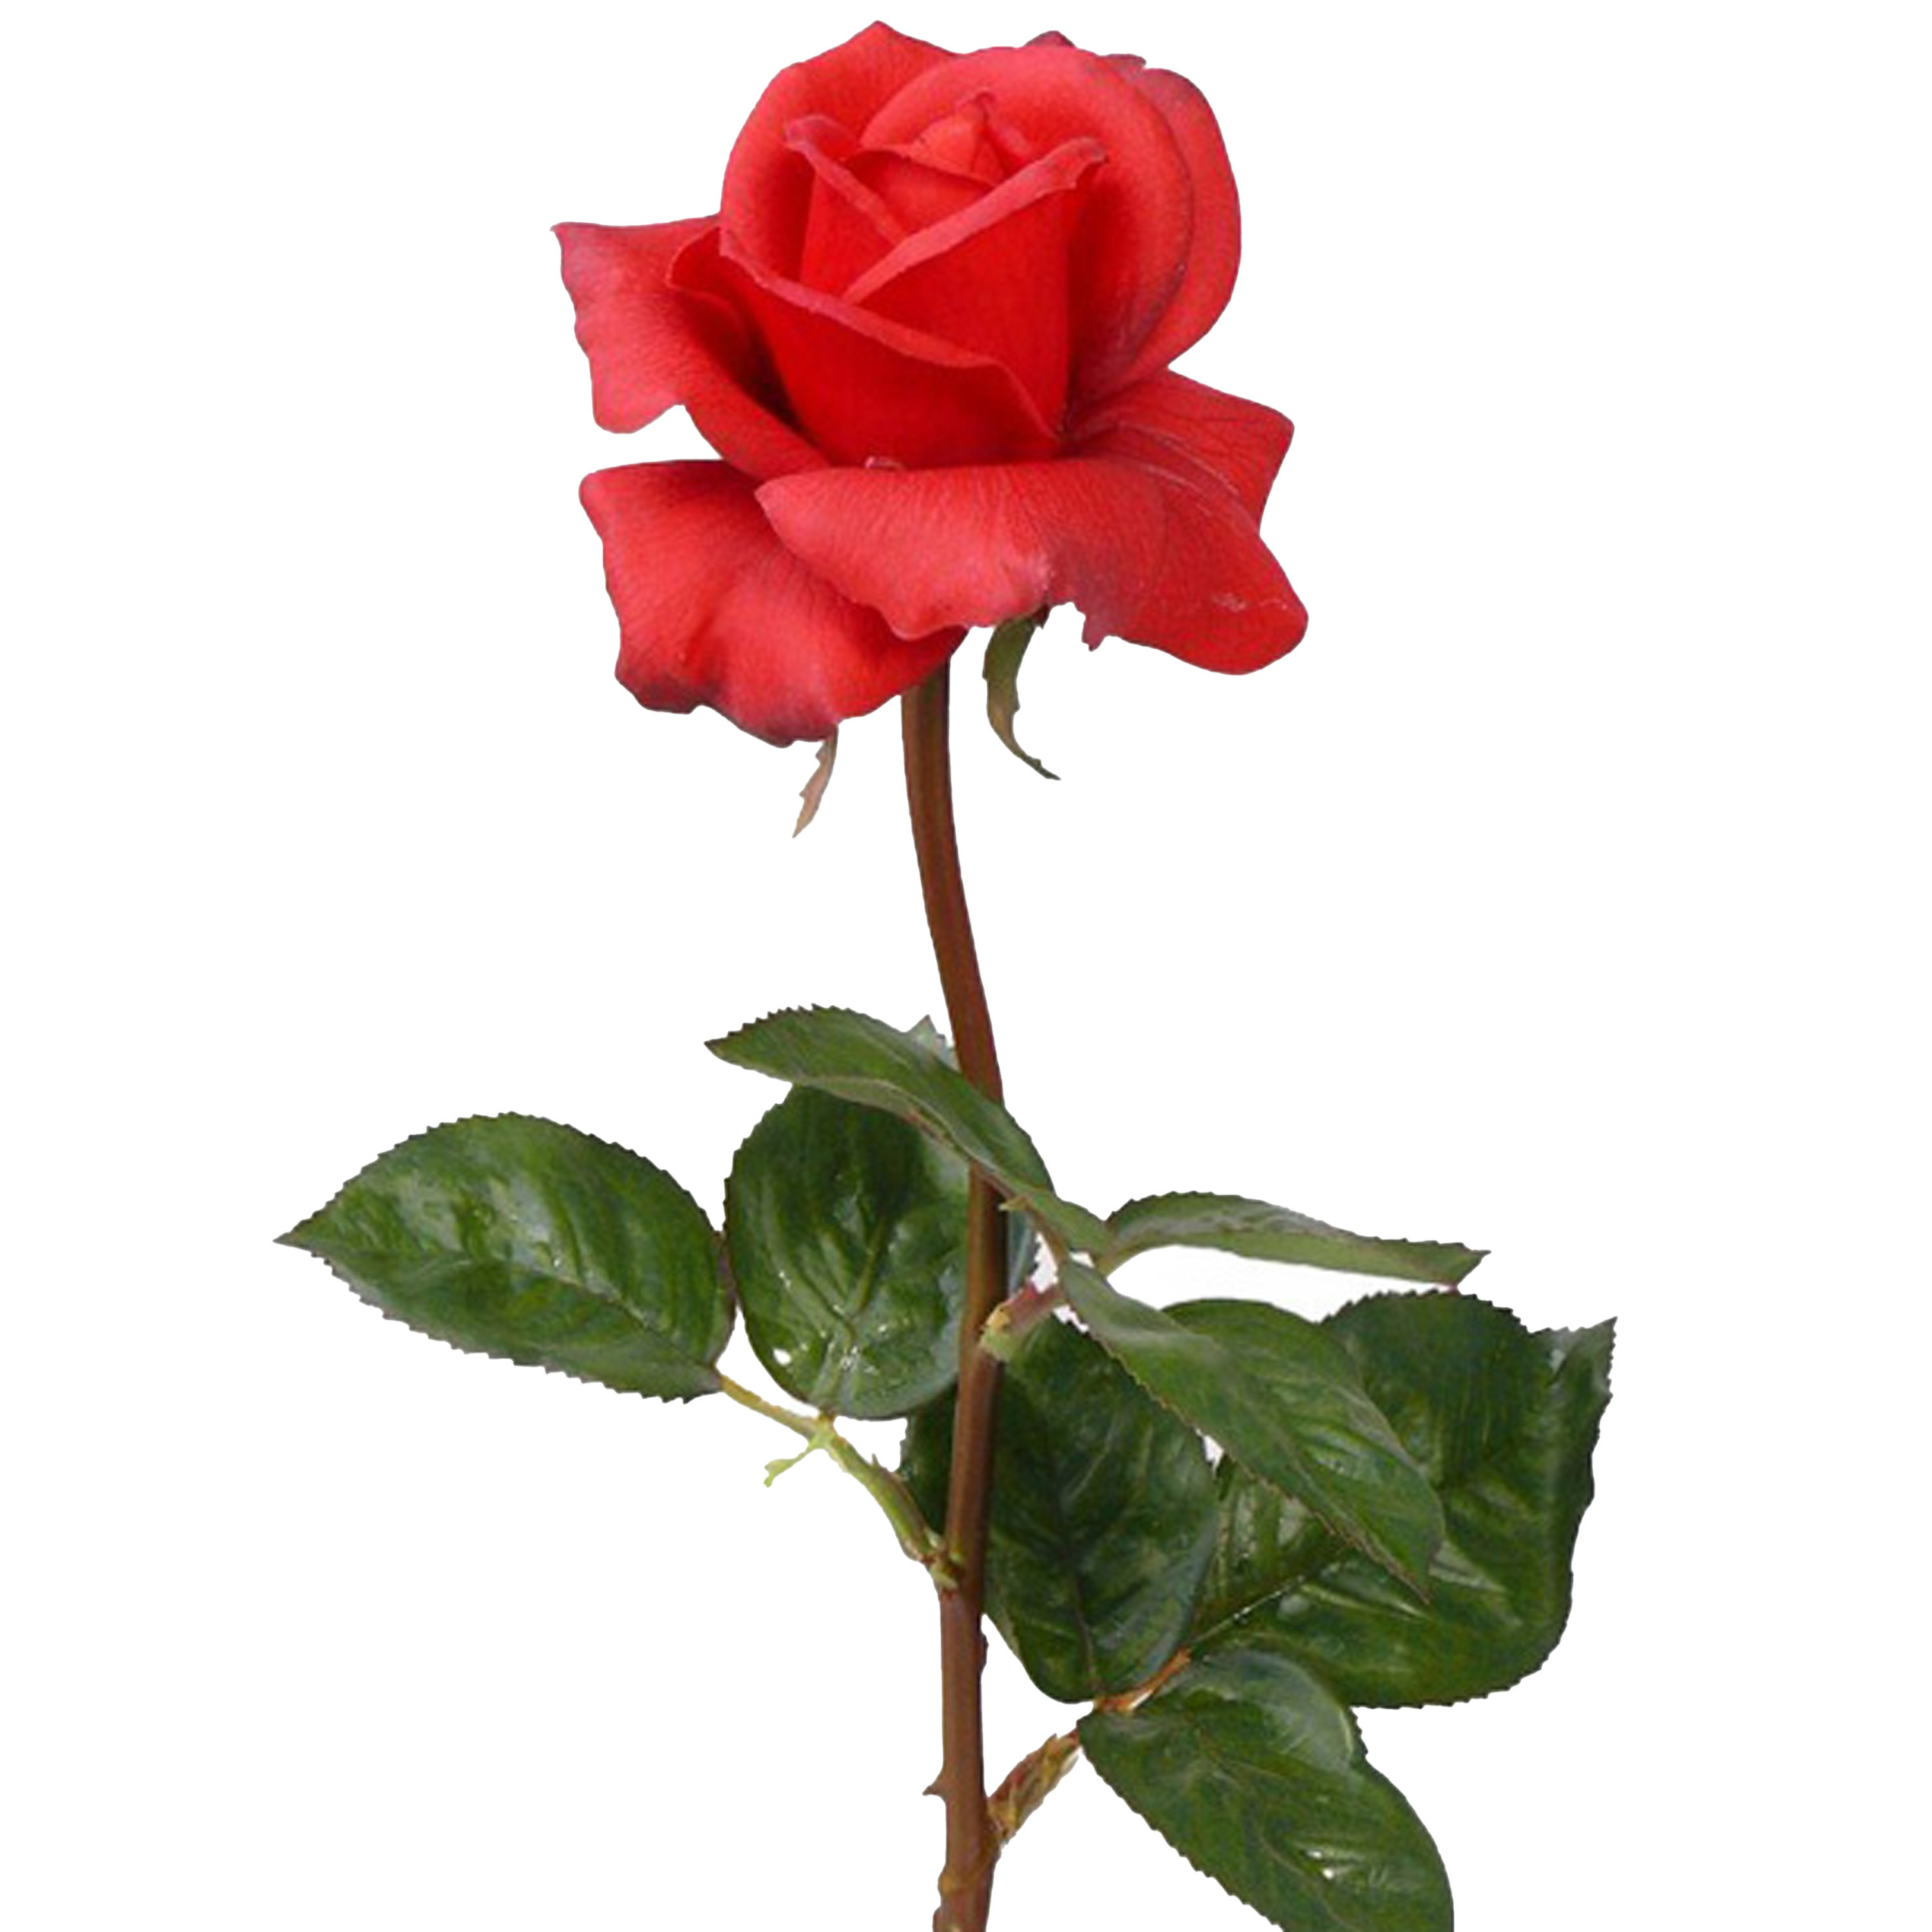 Afbeelding van Kunstbloem roos Caroline - rood - 70 cm - zijde - kunststof steel - decoratie bloemen